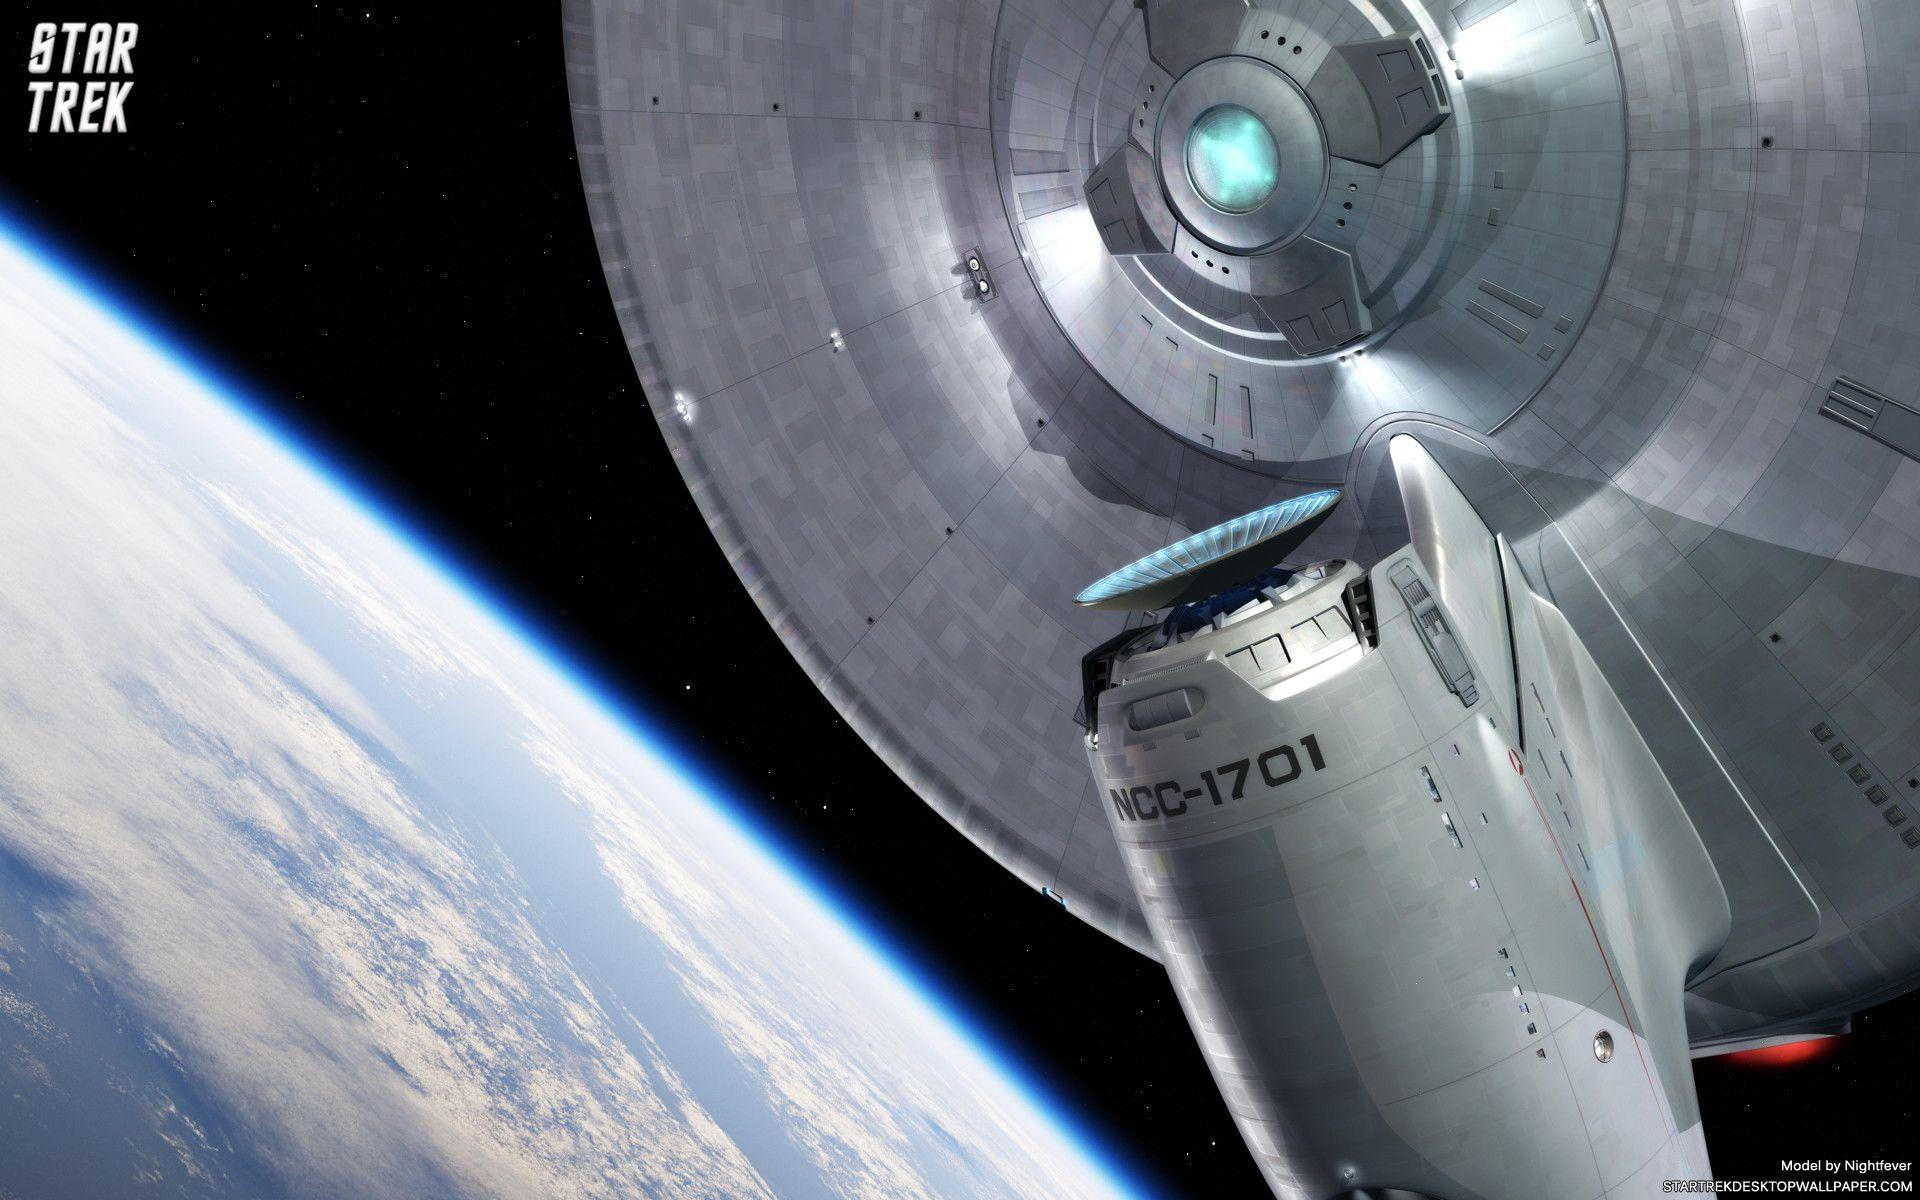 Star Trek USS Enterprise Leaving Earth Orbit, free Star Trek